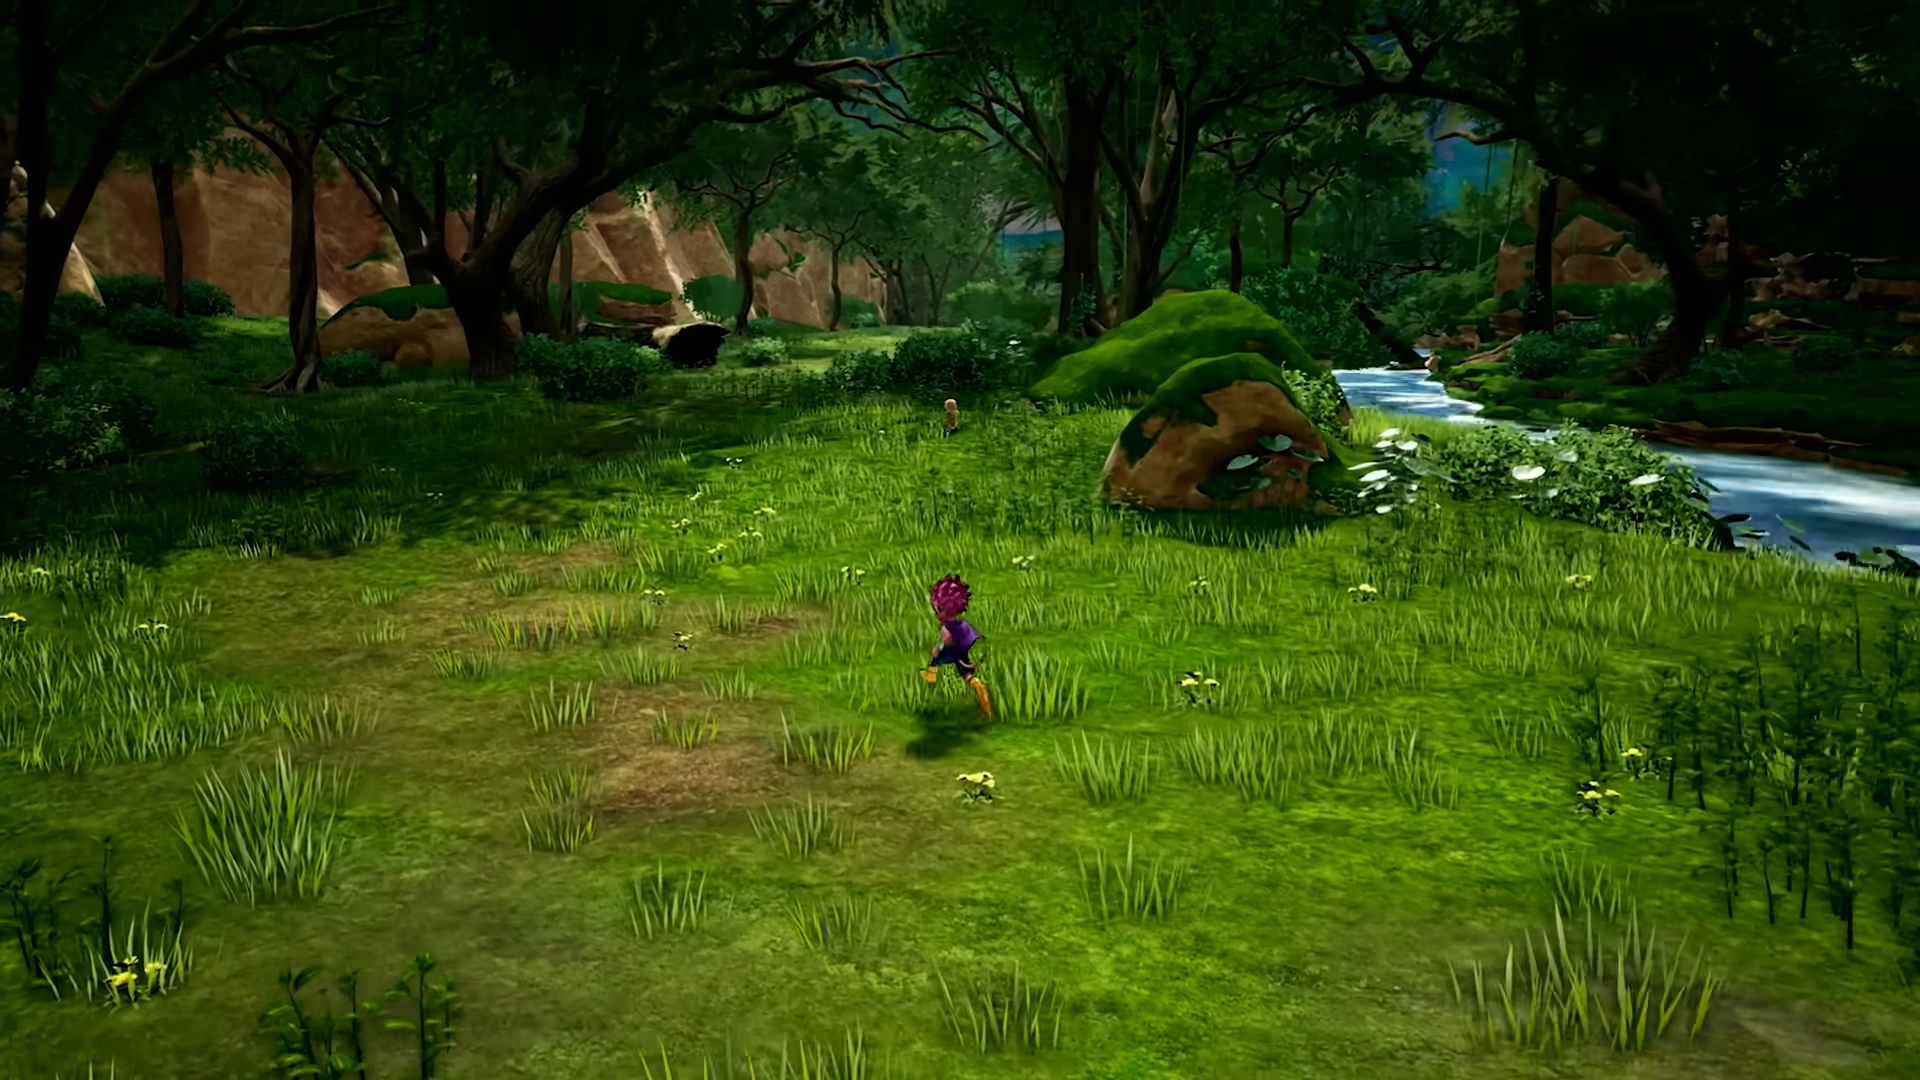 Imagem mostra cena do trailer de SAND LAND, jogo baseado no mangá de Akira Toriyama